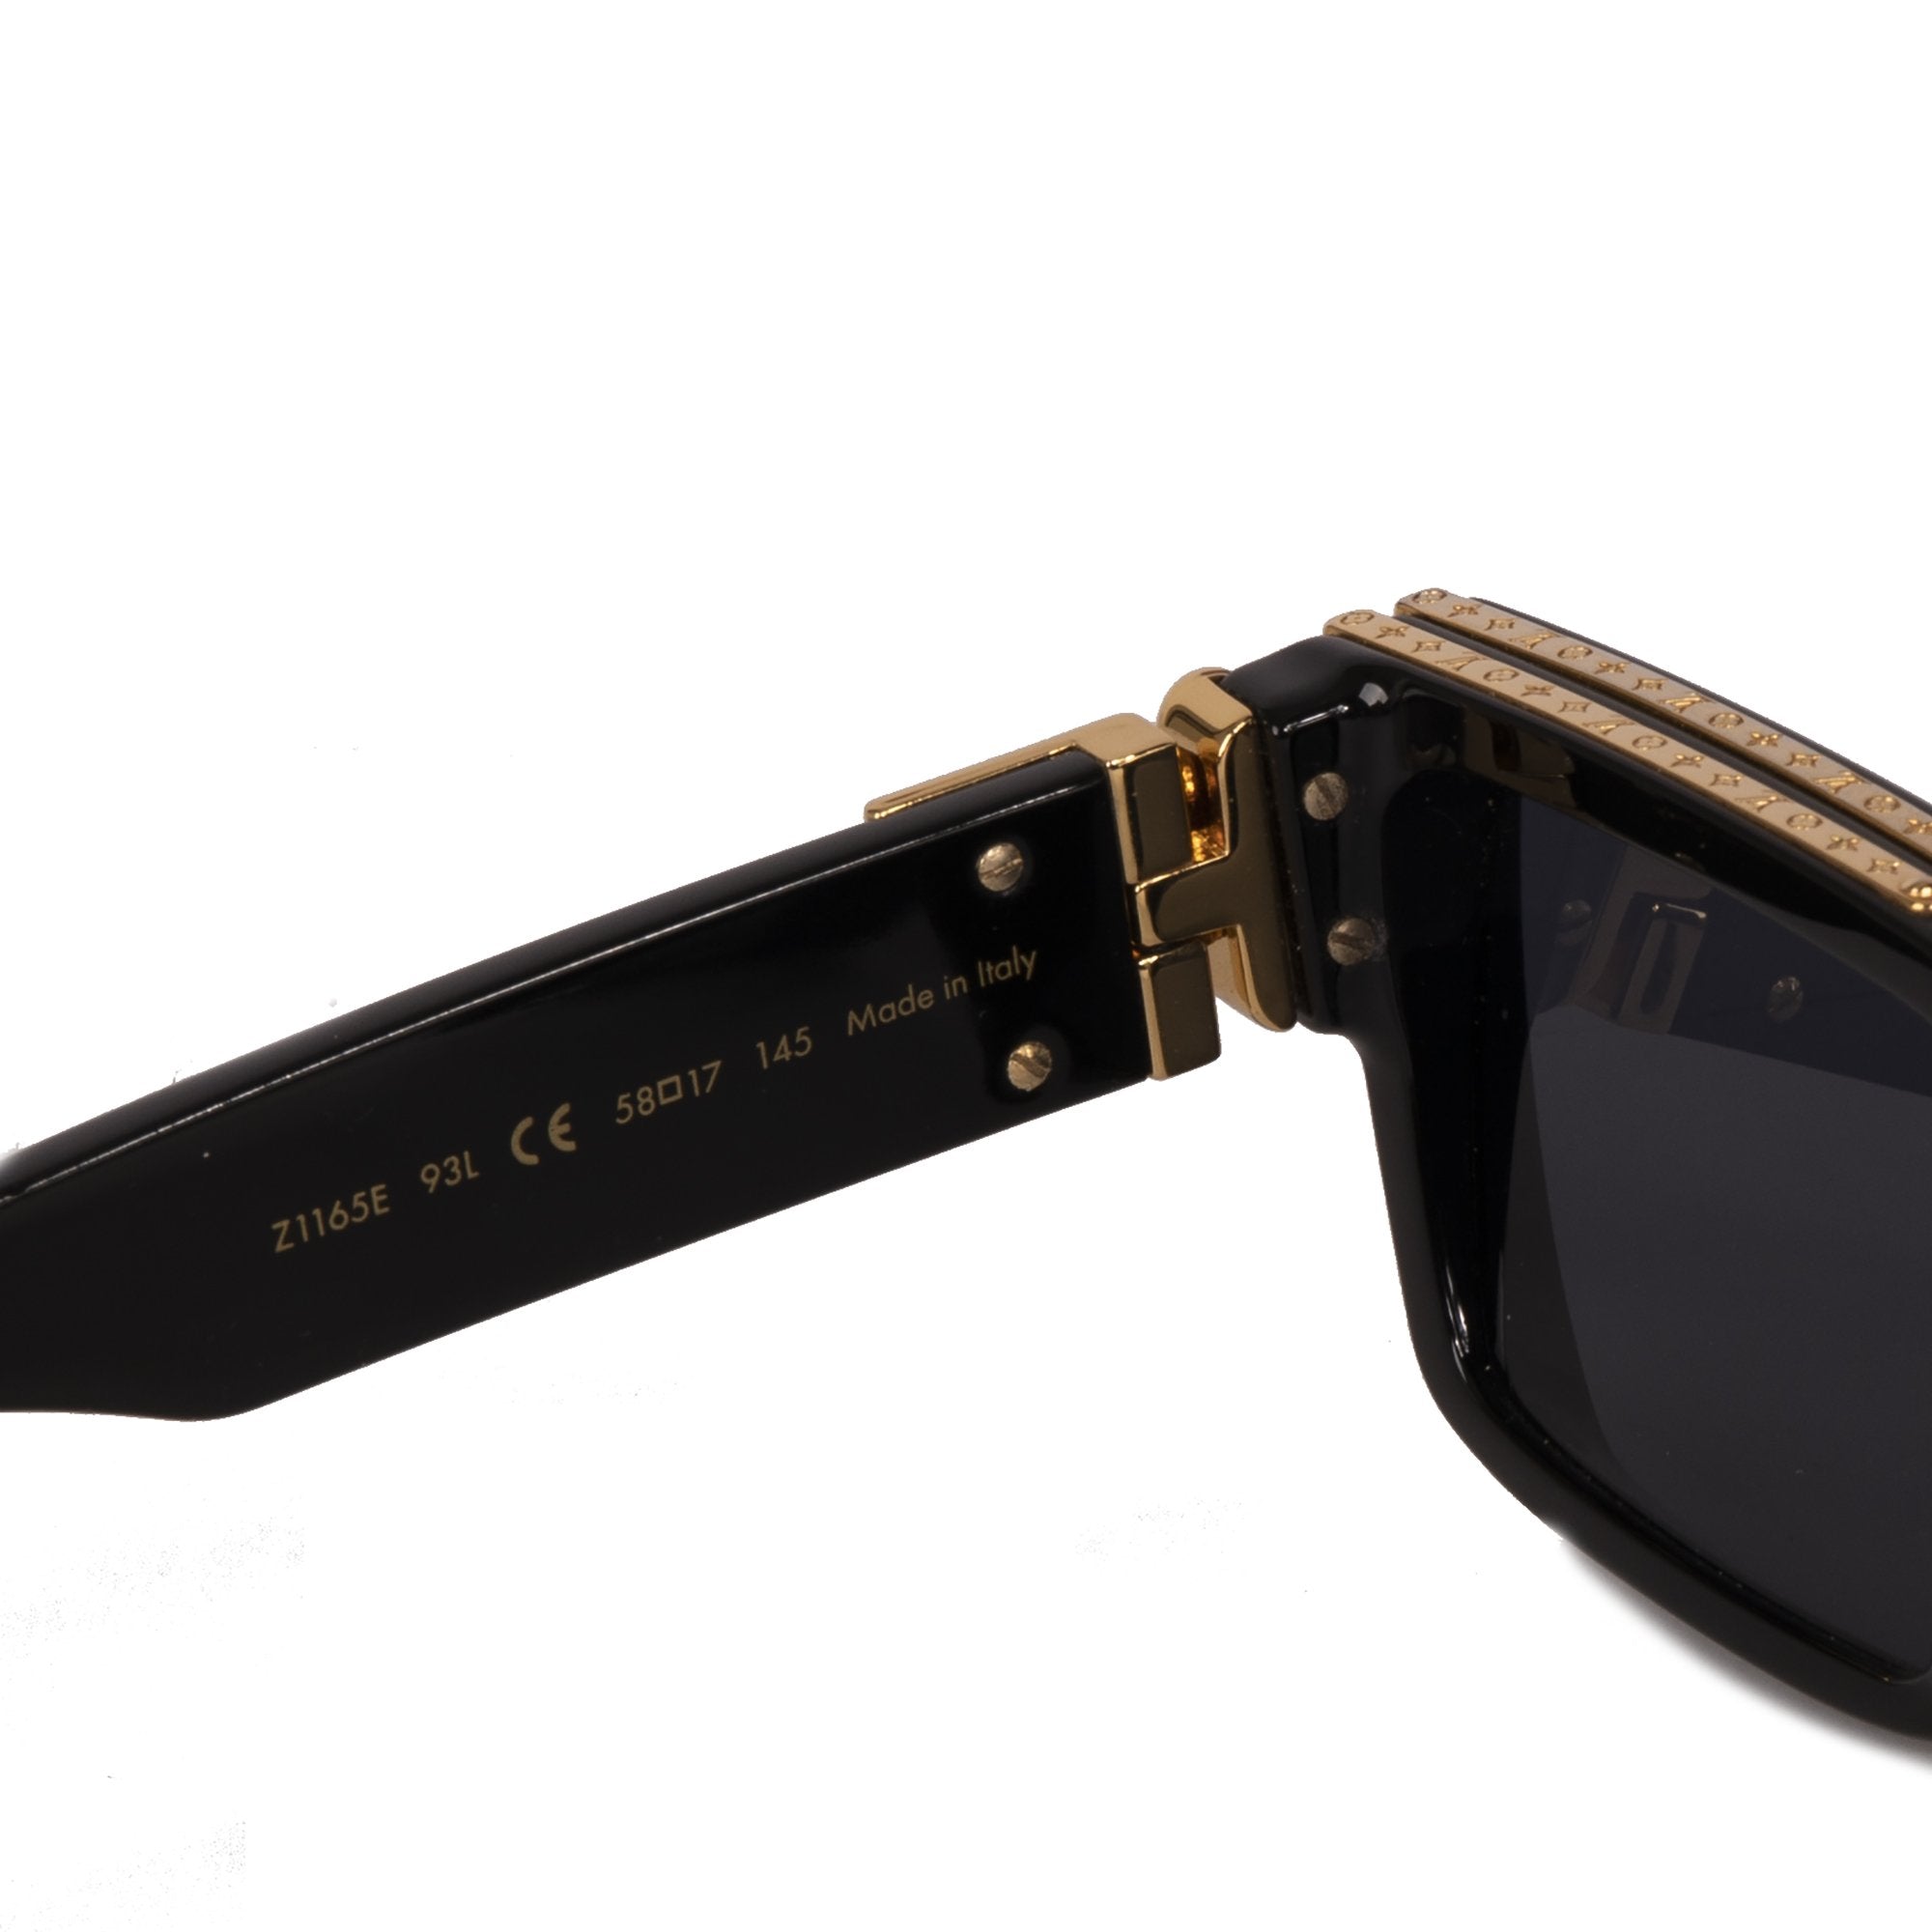 Louis Vuitton sunglasses 1.1 millionaire Z1165E collection